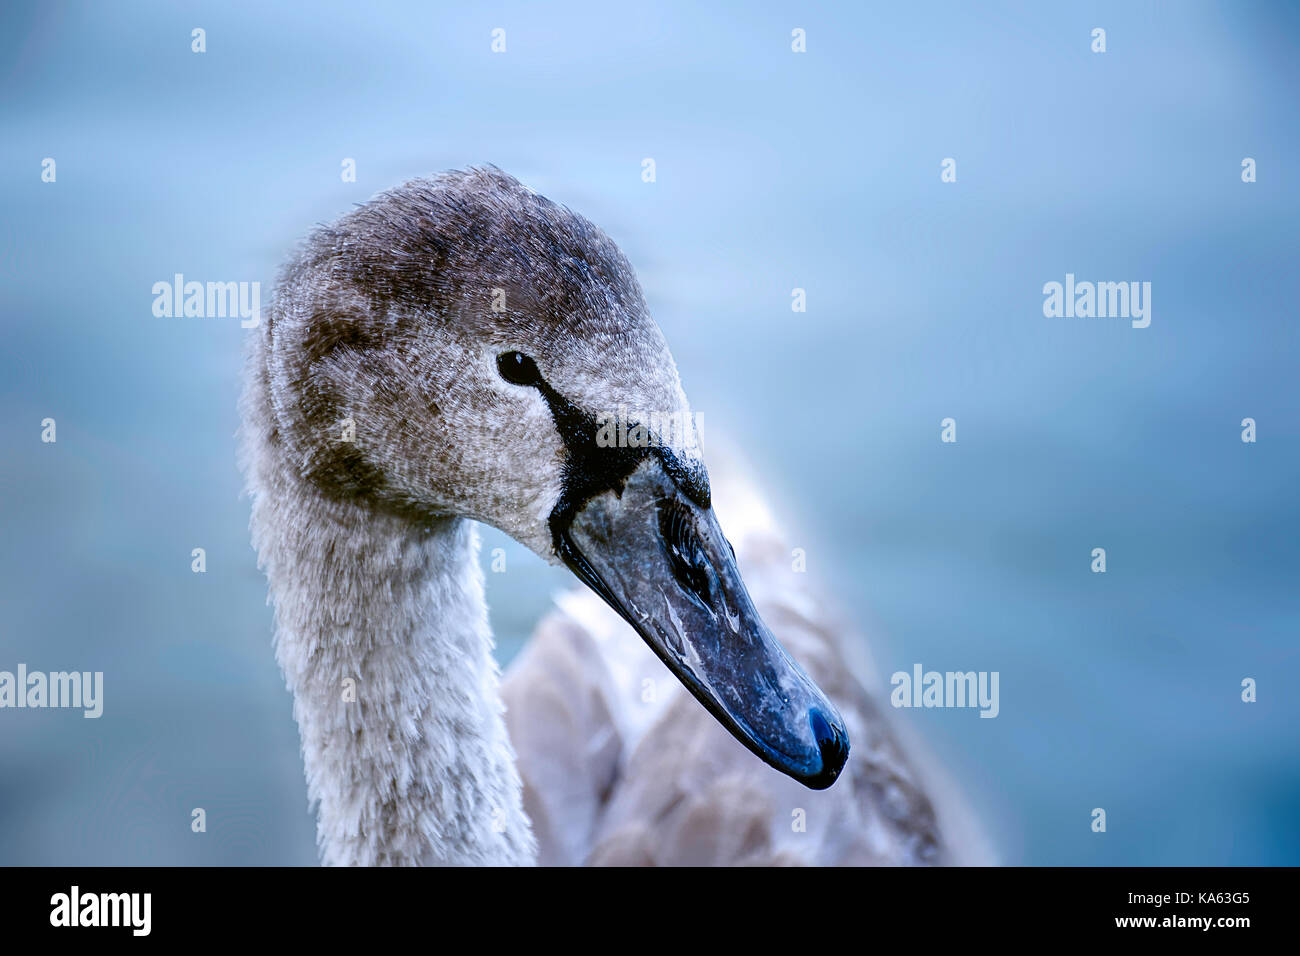 Quasi completamente cresciuti youngster swan con piumaggio passando da grigio a bianco.close up verticale,l'acqua blu in background.westport lago ,stoke on trent. Foto Stock